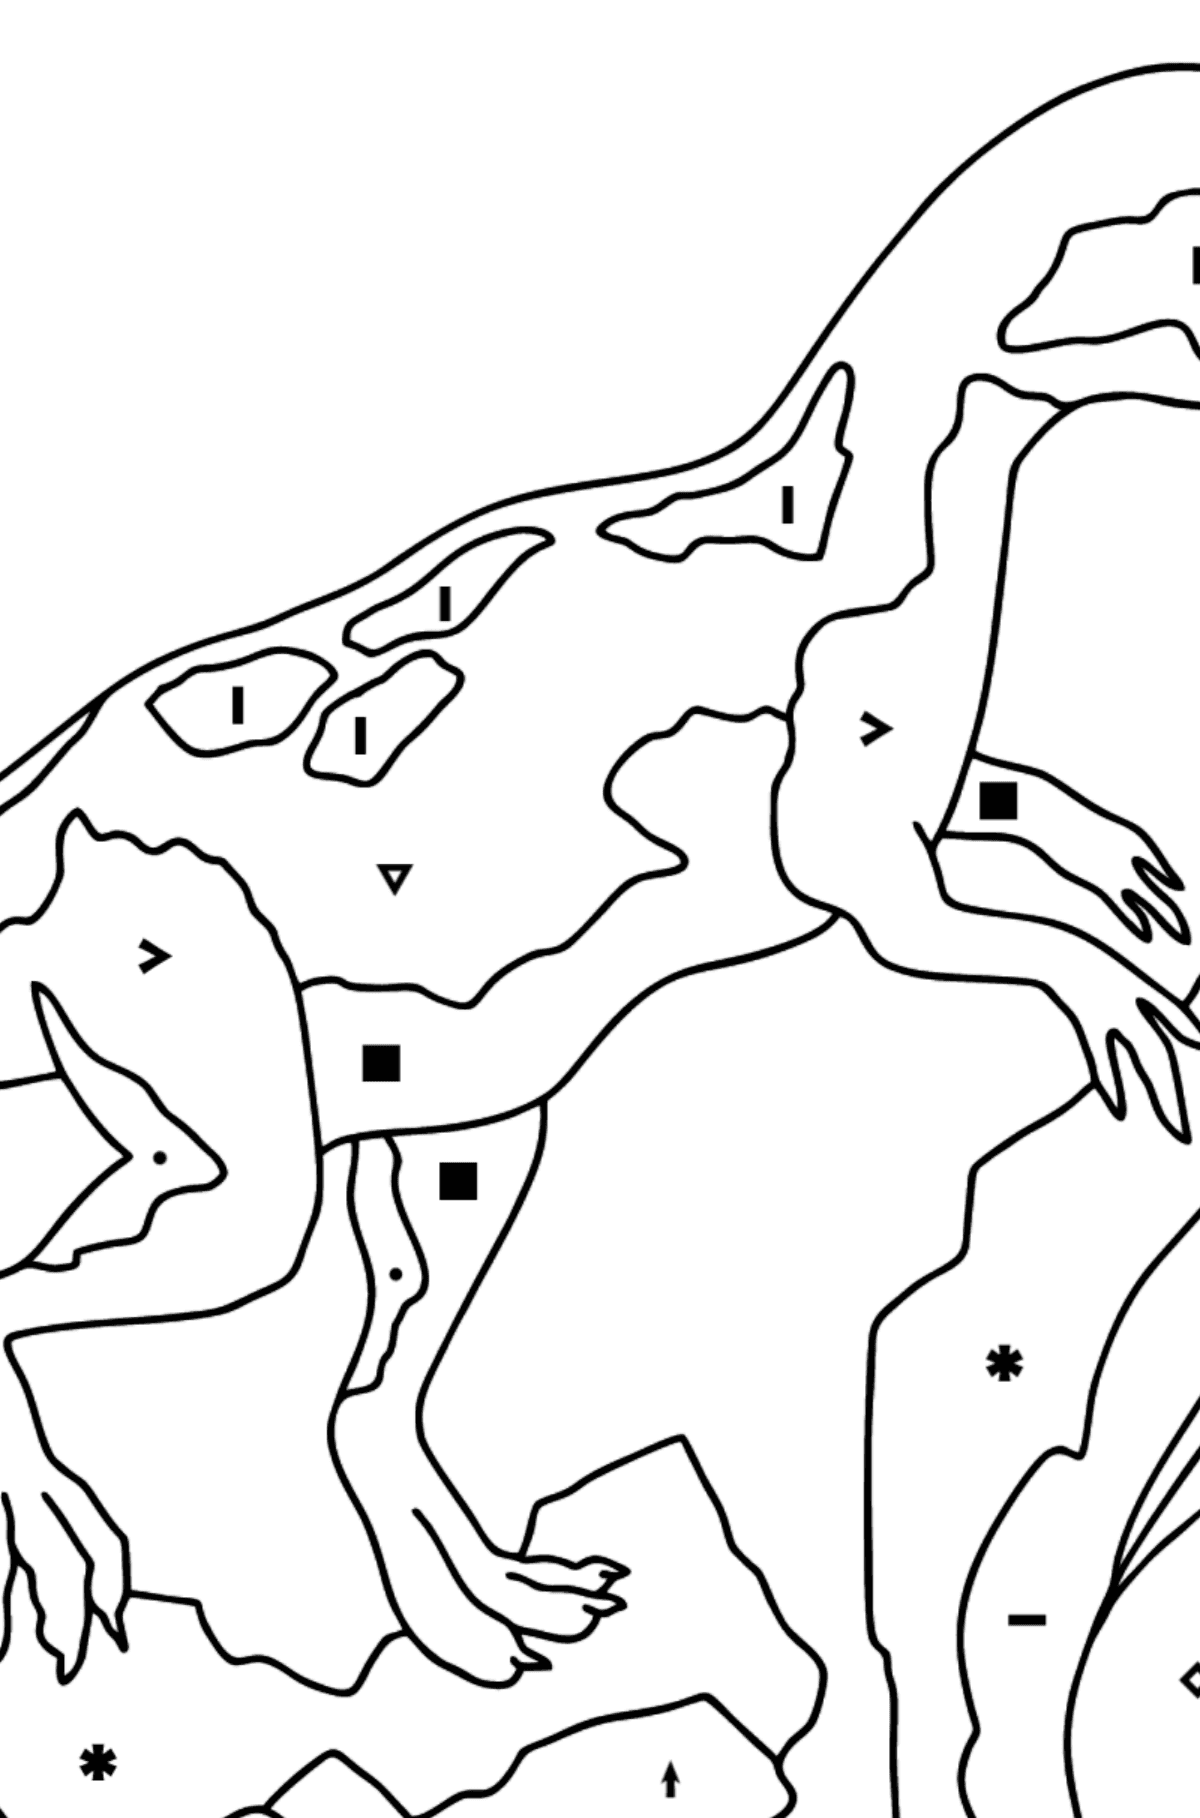 Раскраска динозавров юрского периода (сложно) - По Символам для Детей